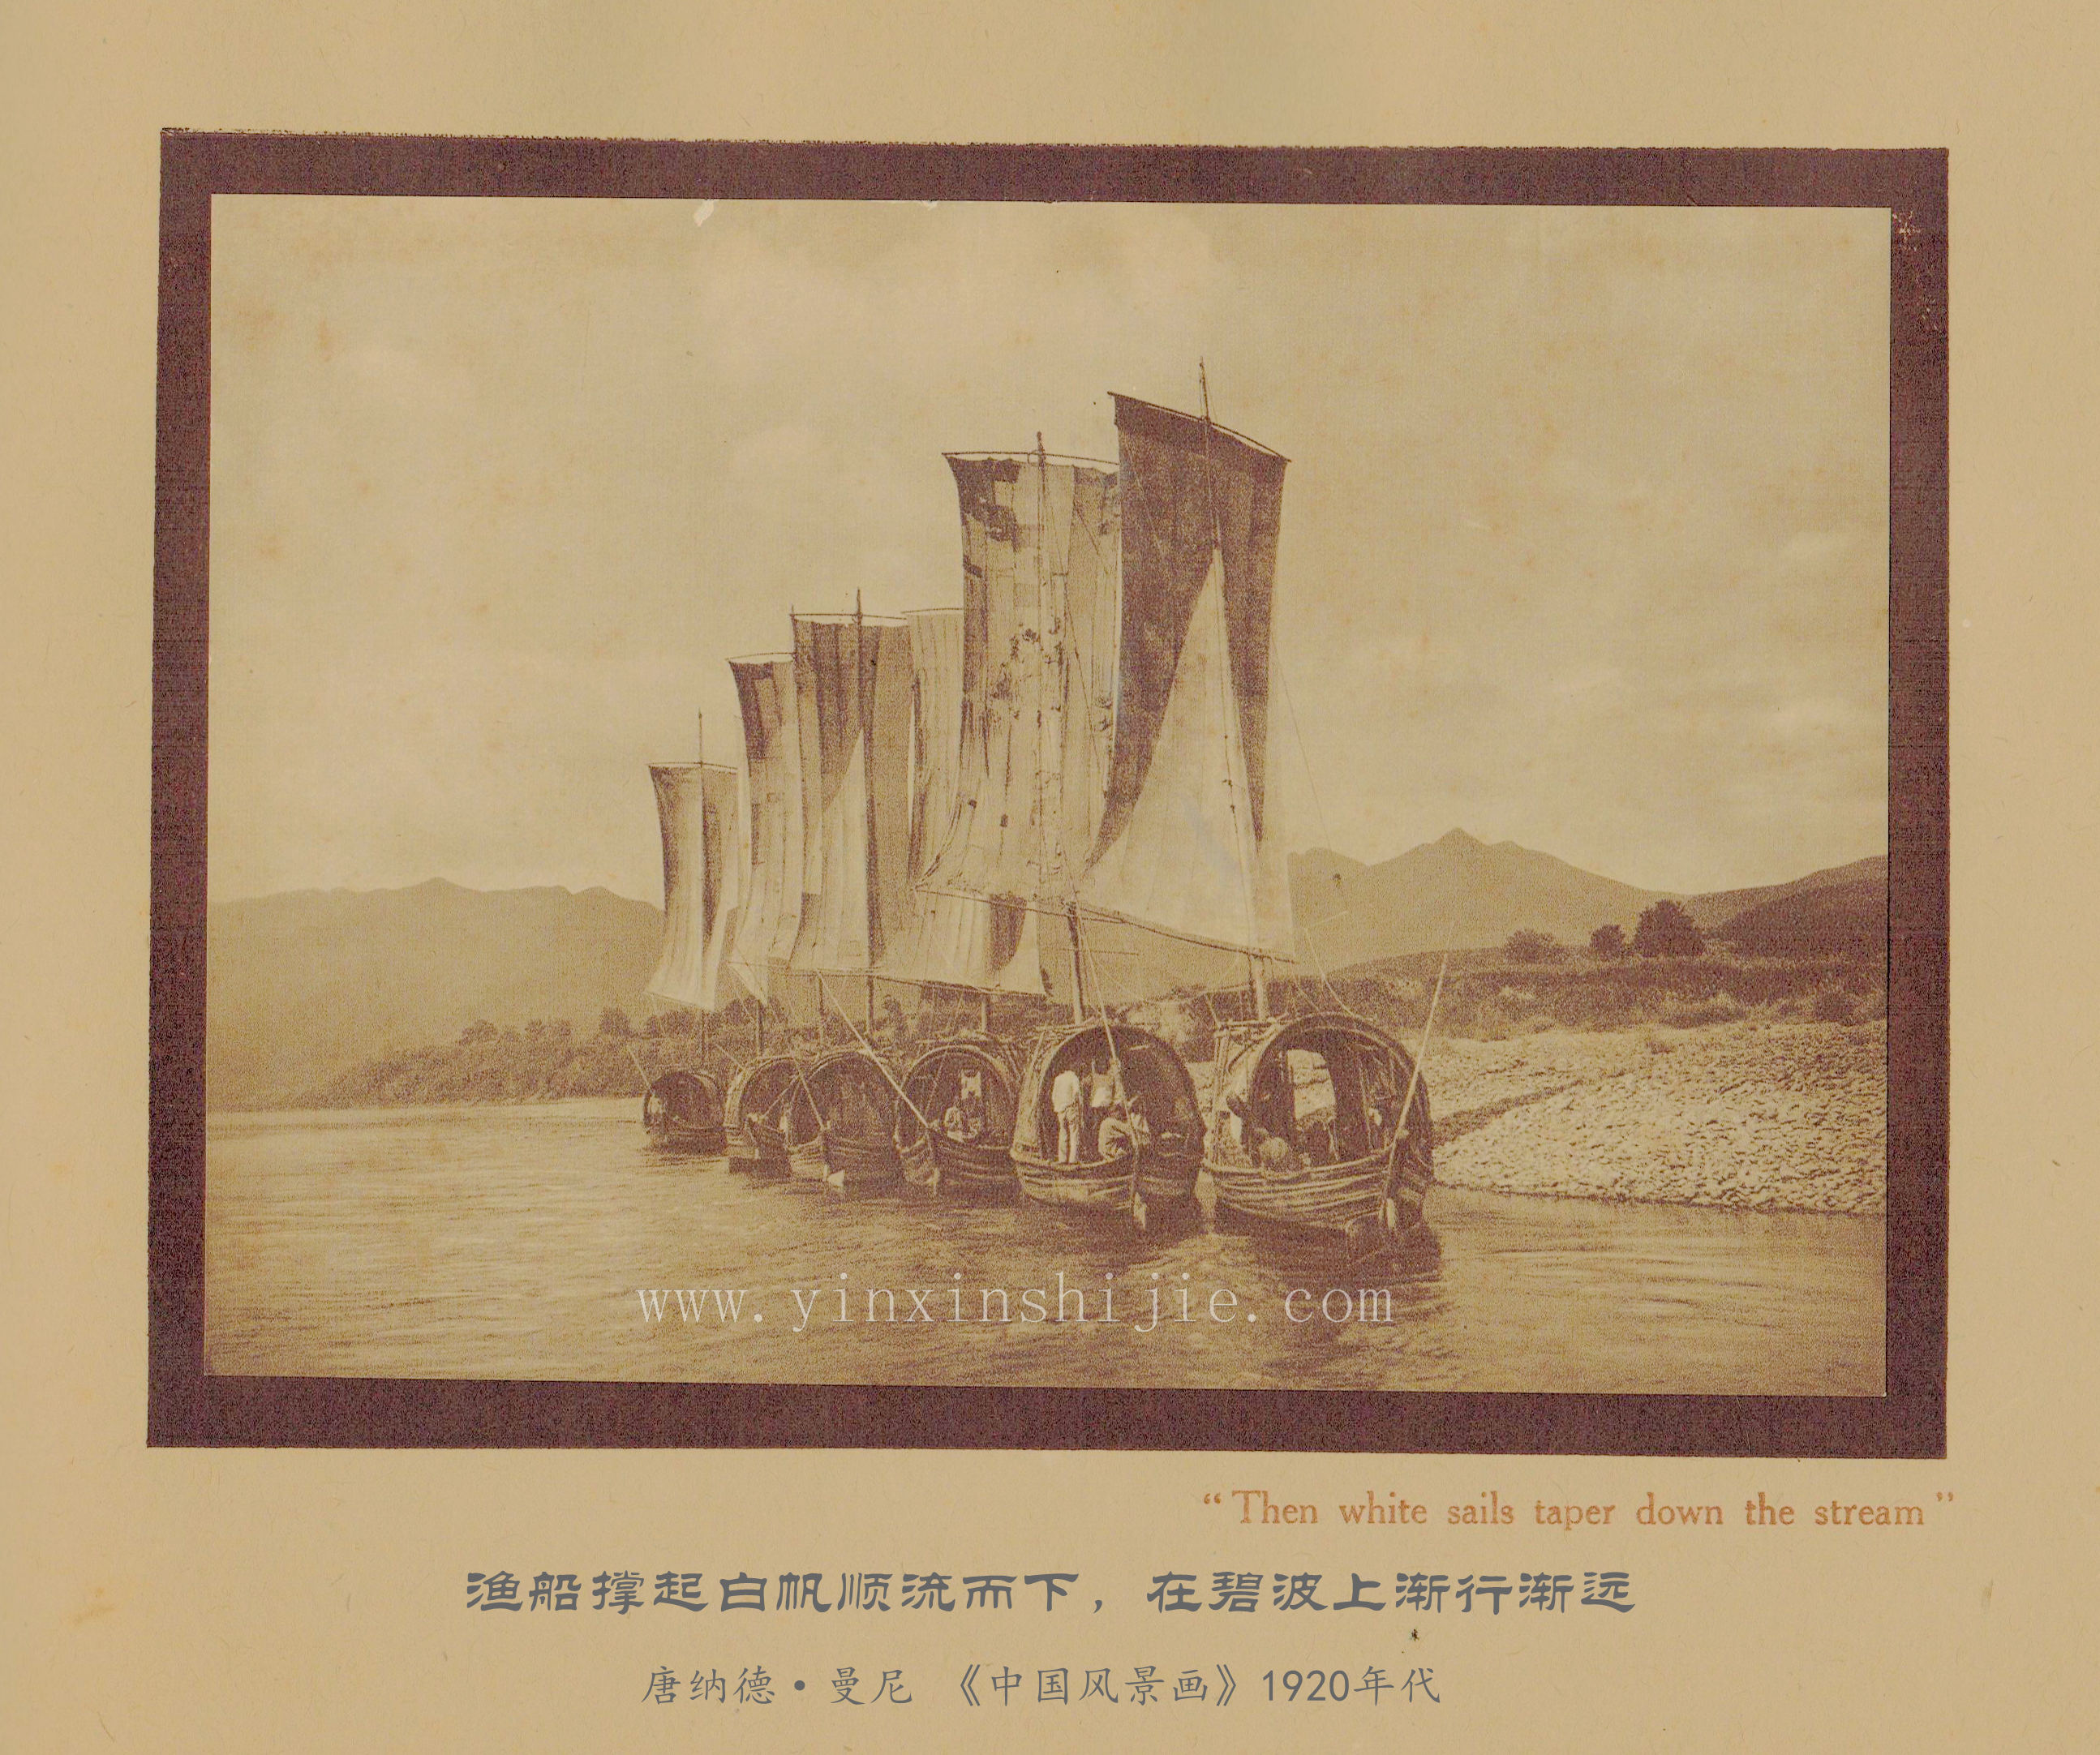 渔船撑起白帆顺流而下，在碧波上渐行渐远-唐纳德·曼尼《中国风景画》1920年